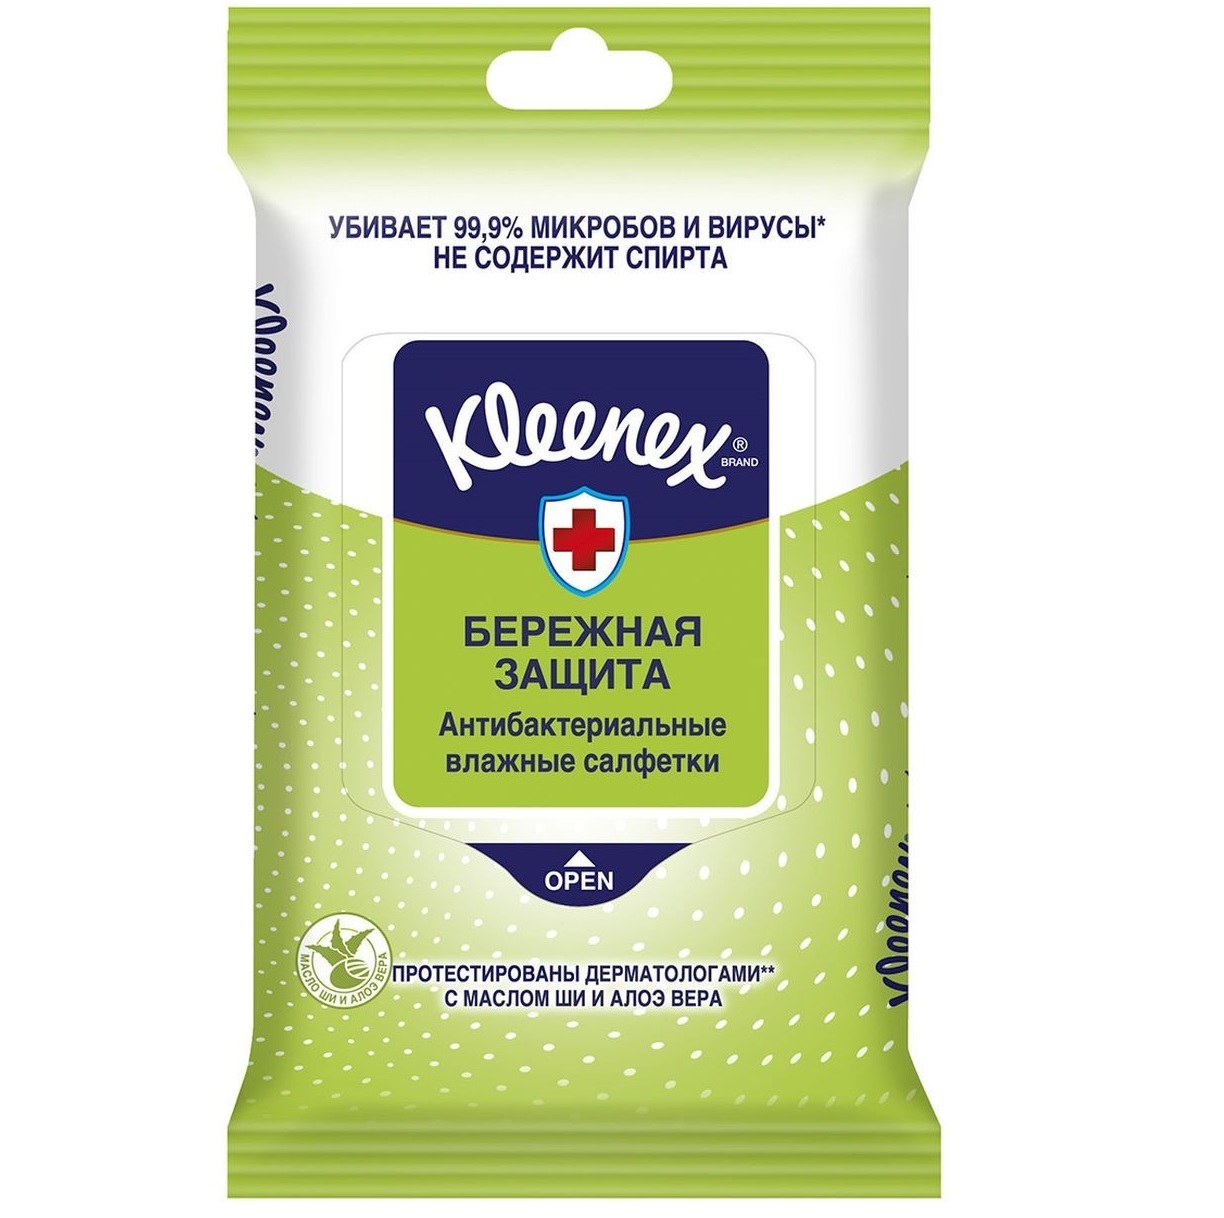 Салфетки влажные Kleenex Protect антибактериальные 10 шт.(9450211) kleenex салфетки влажные антибактериальные 40 шт